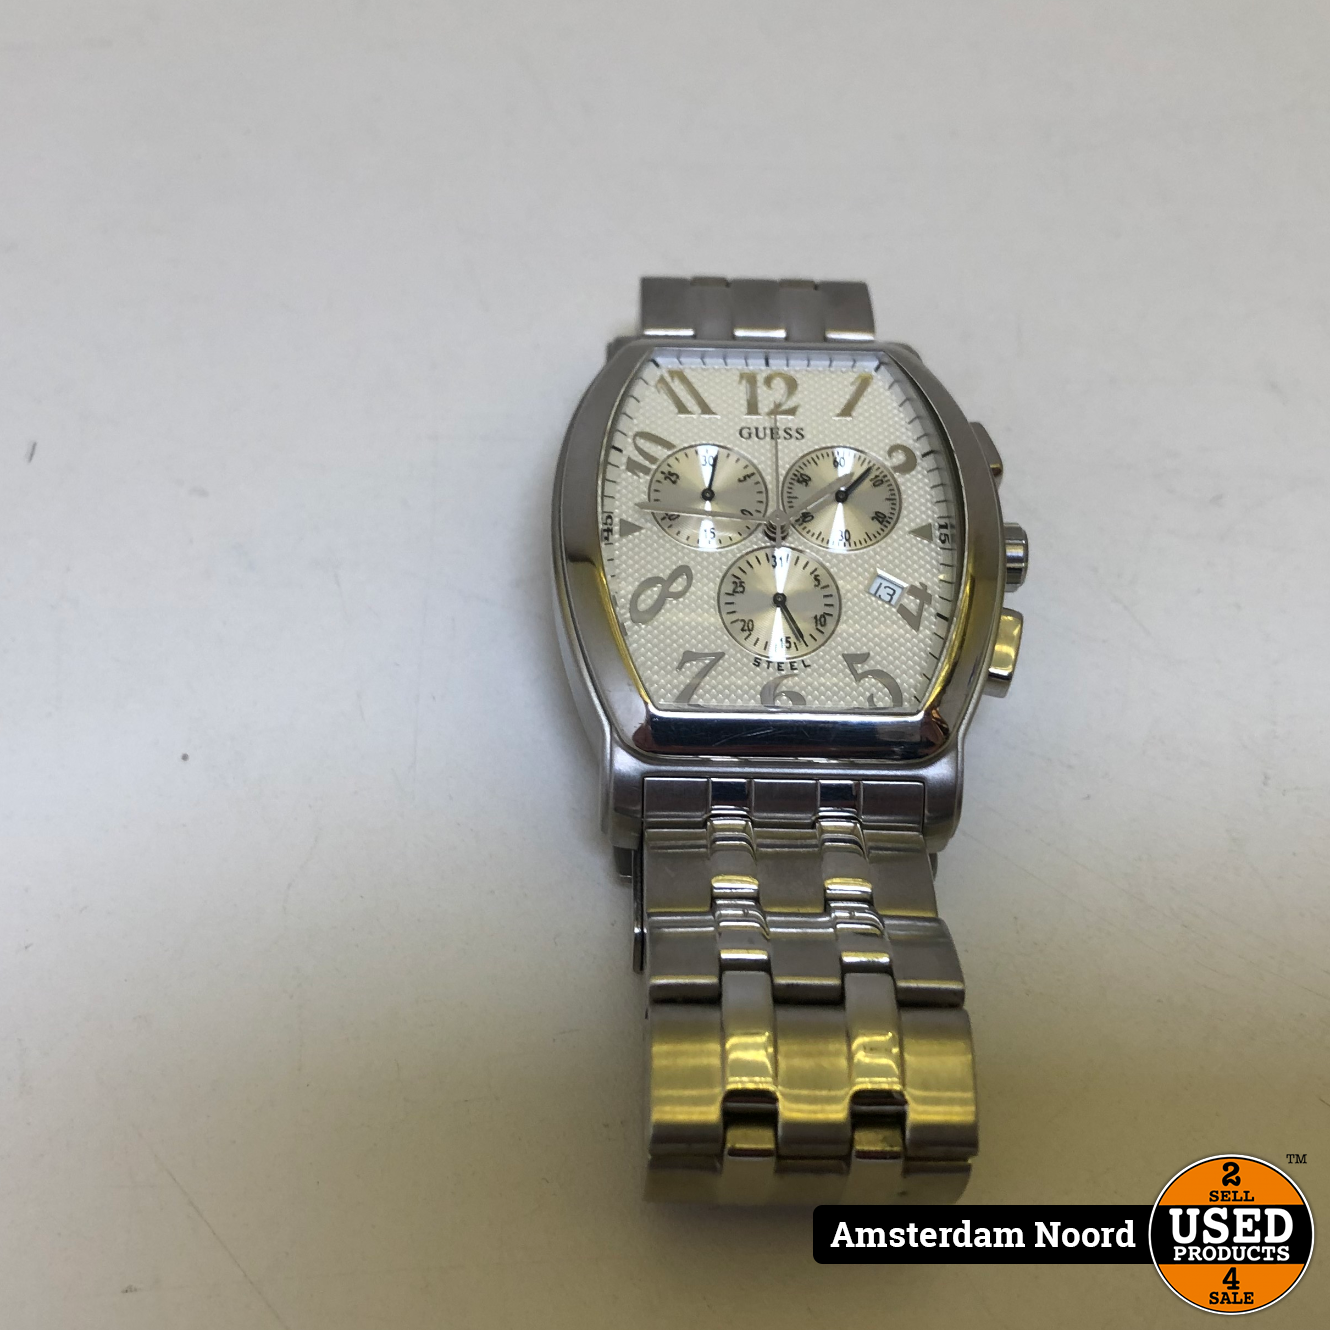 verschijnen Sovjet Natura Guess I13522G1 Heren Horloge - Used Products Amsterdam Noord